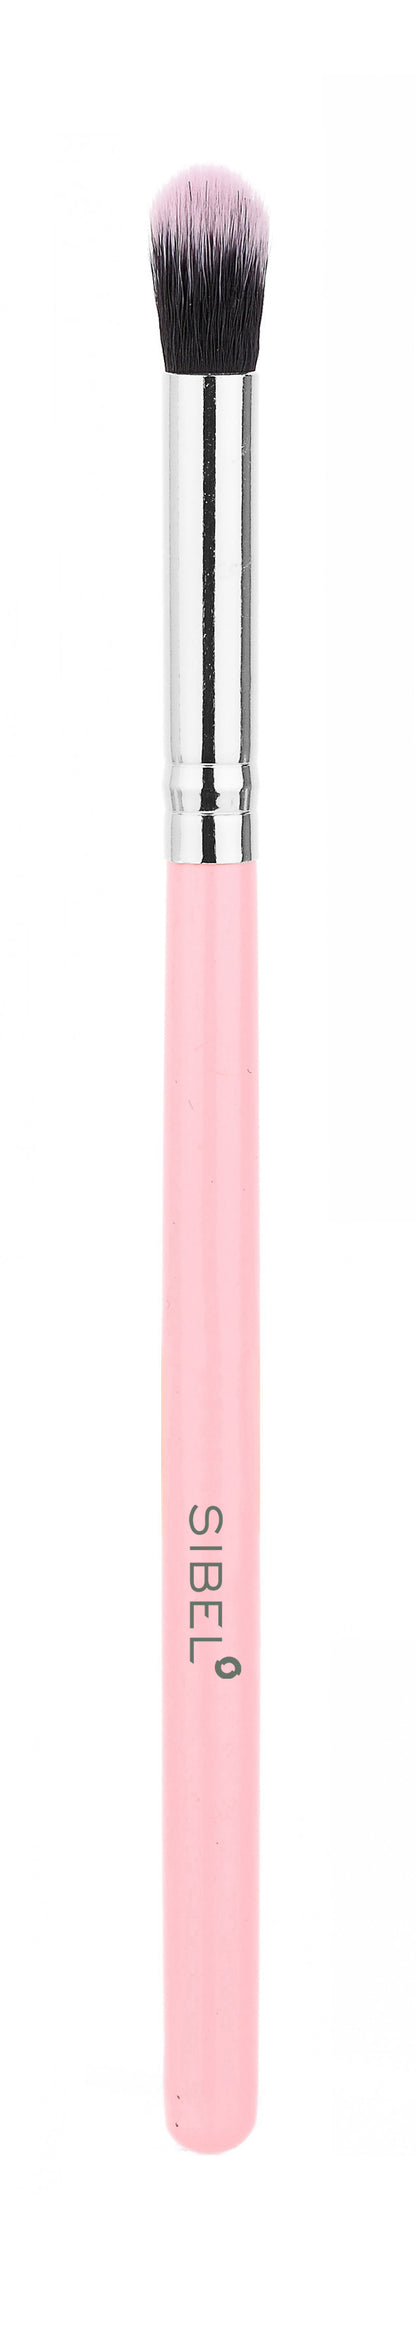 Pink Flamingo Cosmetics Brushes 11pcs